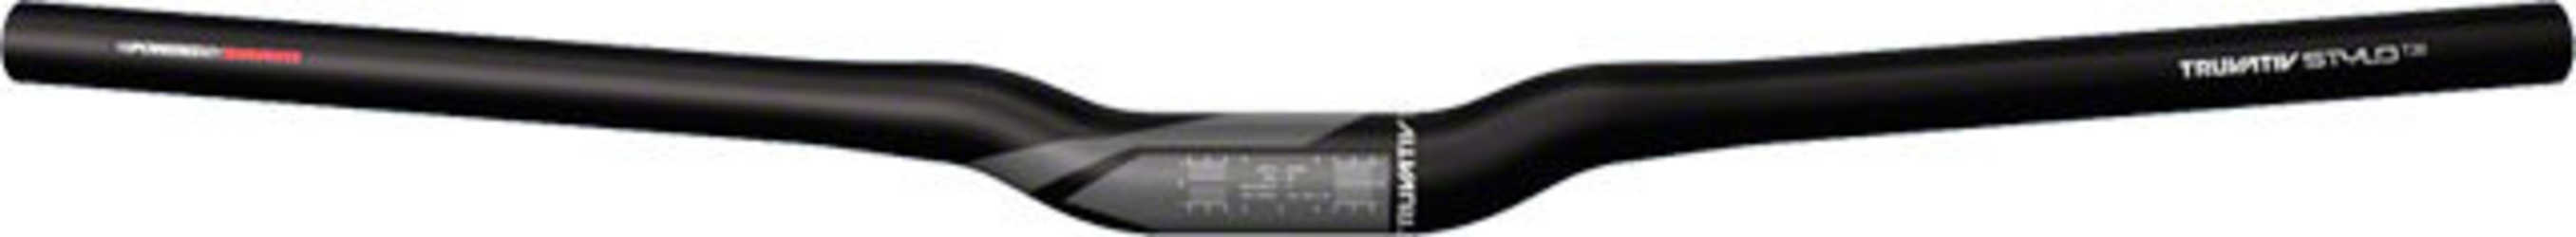 Styre Truvativ Stylo T20 Riser 30 31.8 mm 680 mm svart från Truvativ